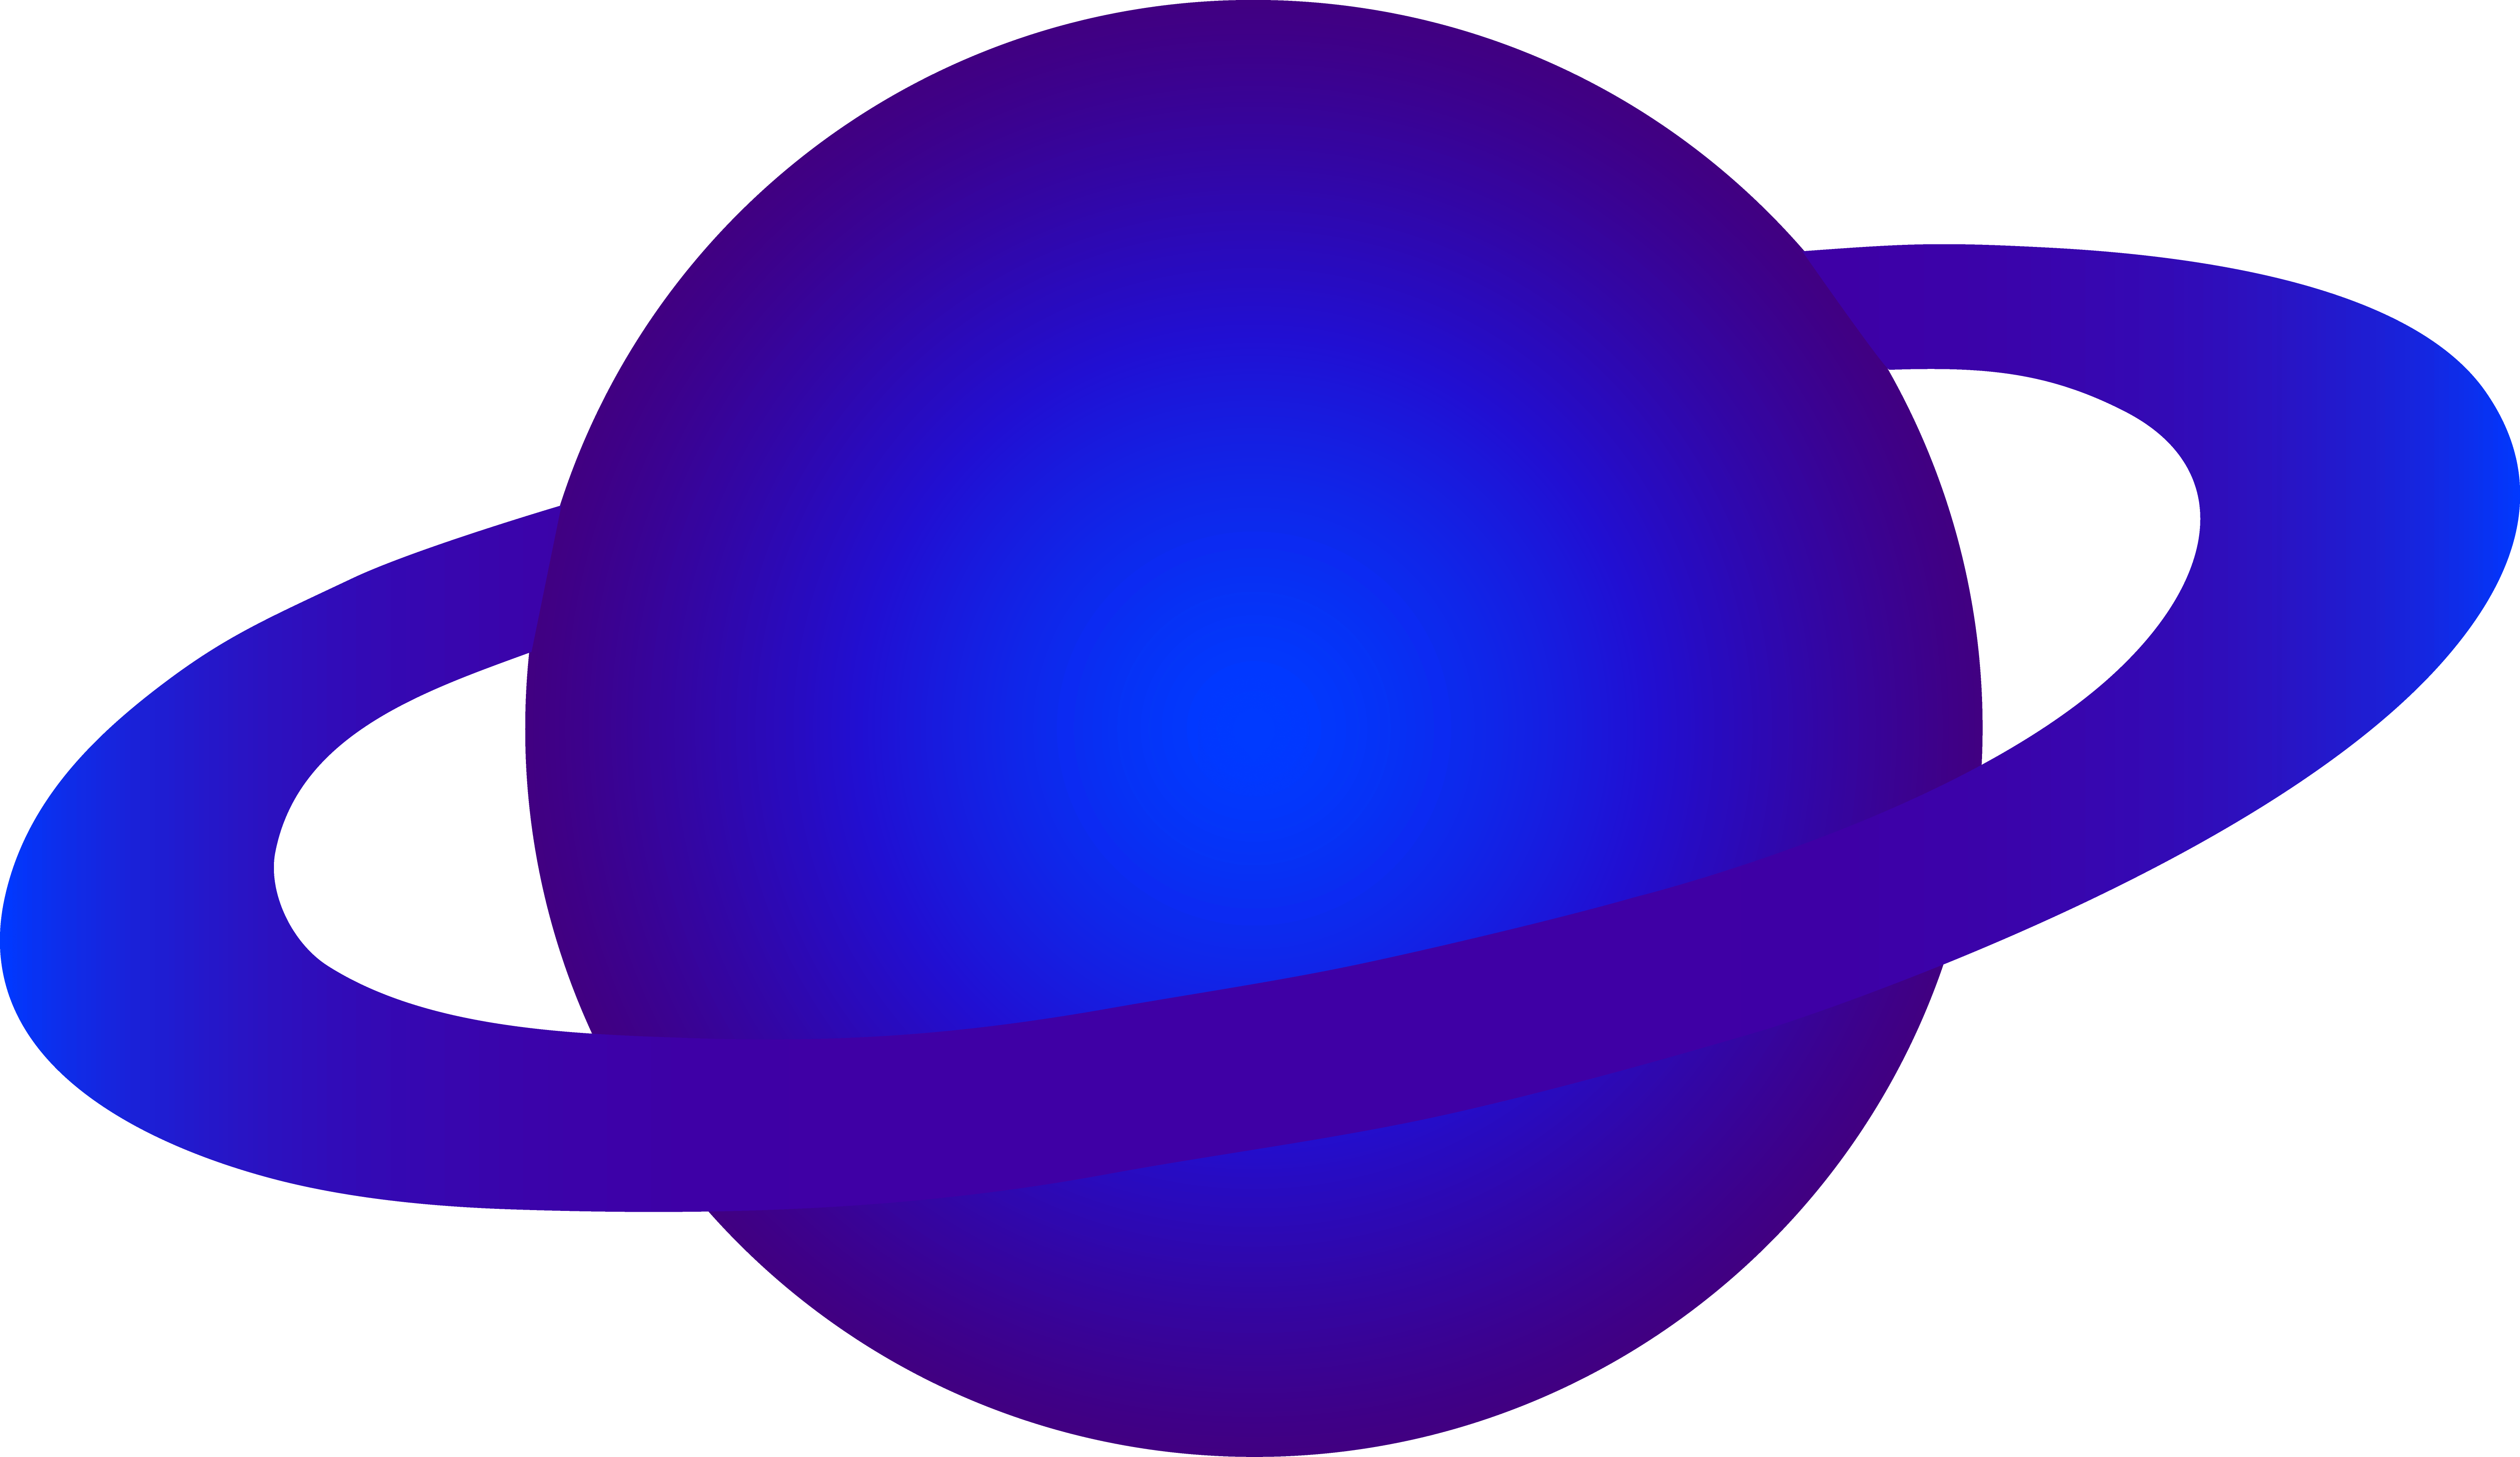 planeten clipart purple